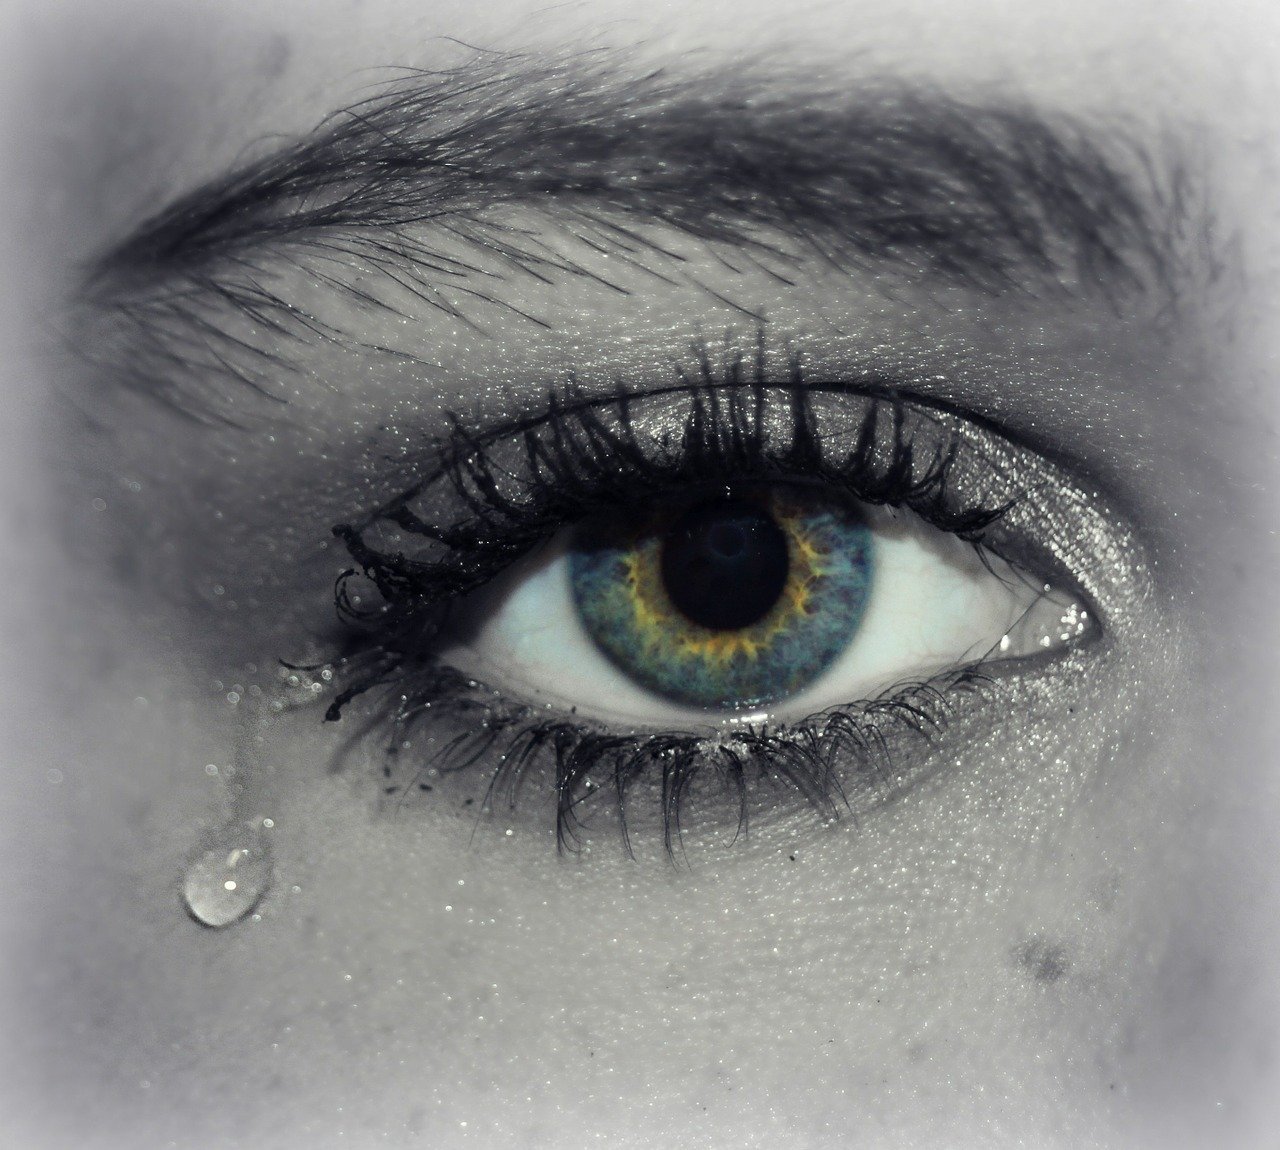 唏嘘于爱情:流泪的歌曲我为那爱情流下伤心的泪